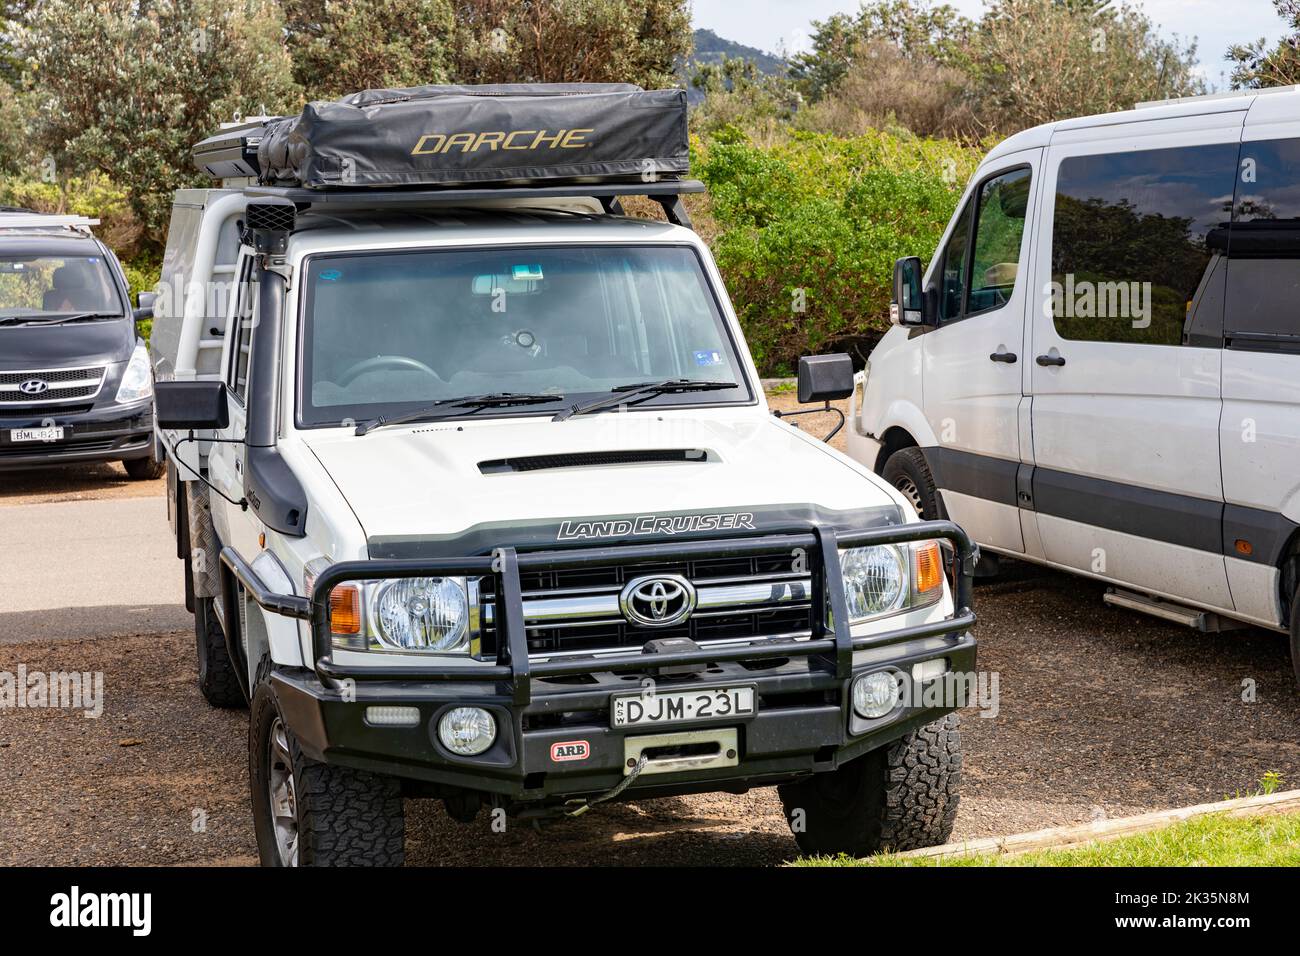 2016 bianco Toyota LandCruiser versione da tavolo con tettoia posteriore montata e tenda da tetto Darche, allestita per il overload touring, Australia Foto Stock